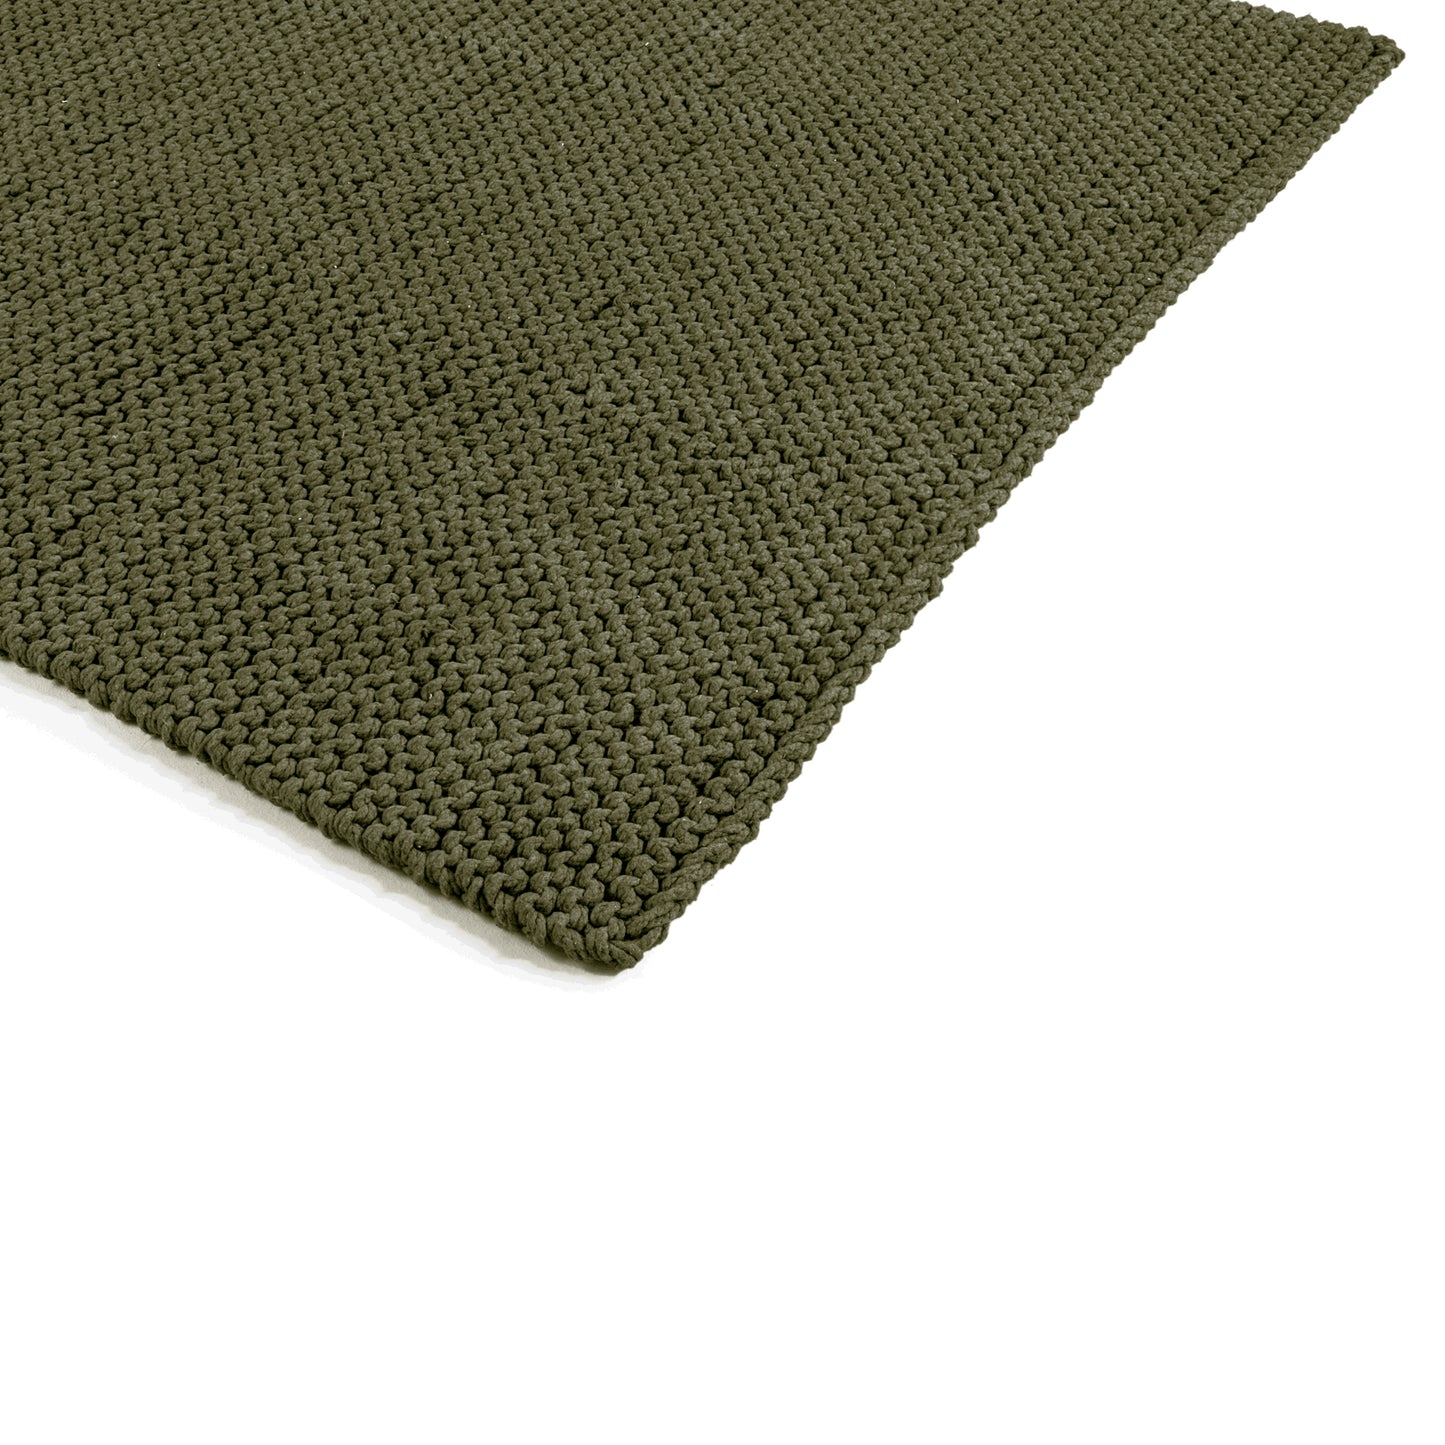 Tapete em tricô artesanal Verde, com fio 100% algodão. Dimensões: Largura - 150cm; Comprimento - 200cm. 